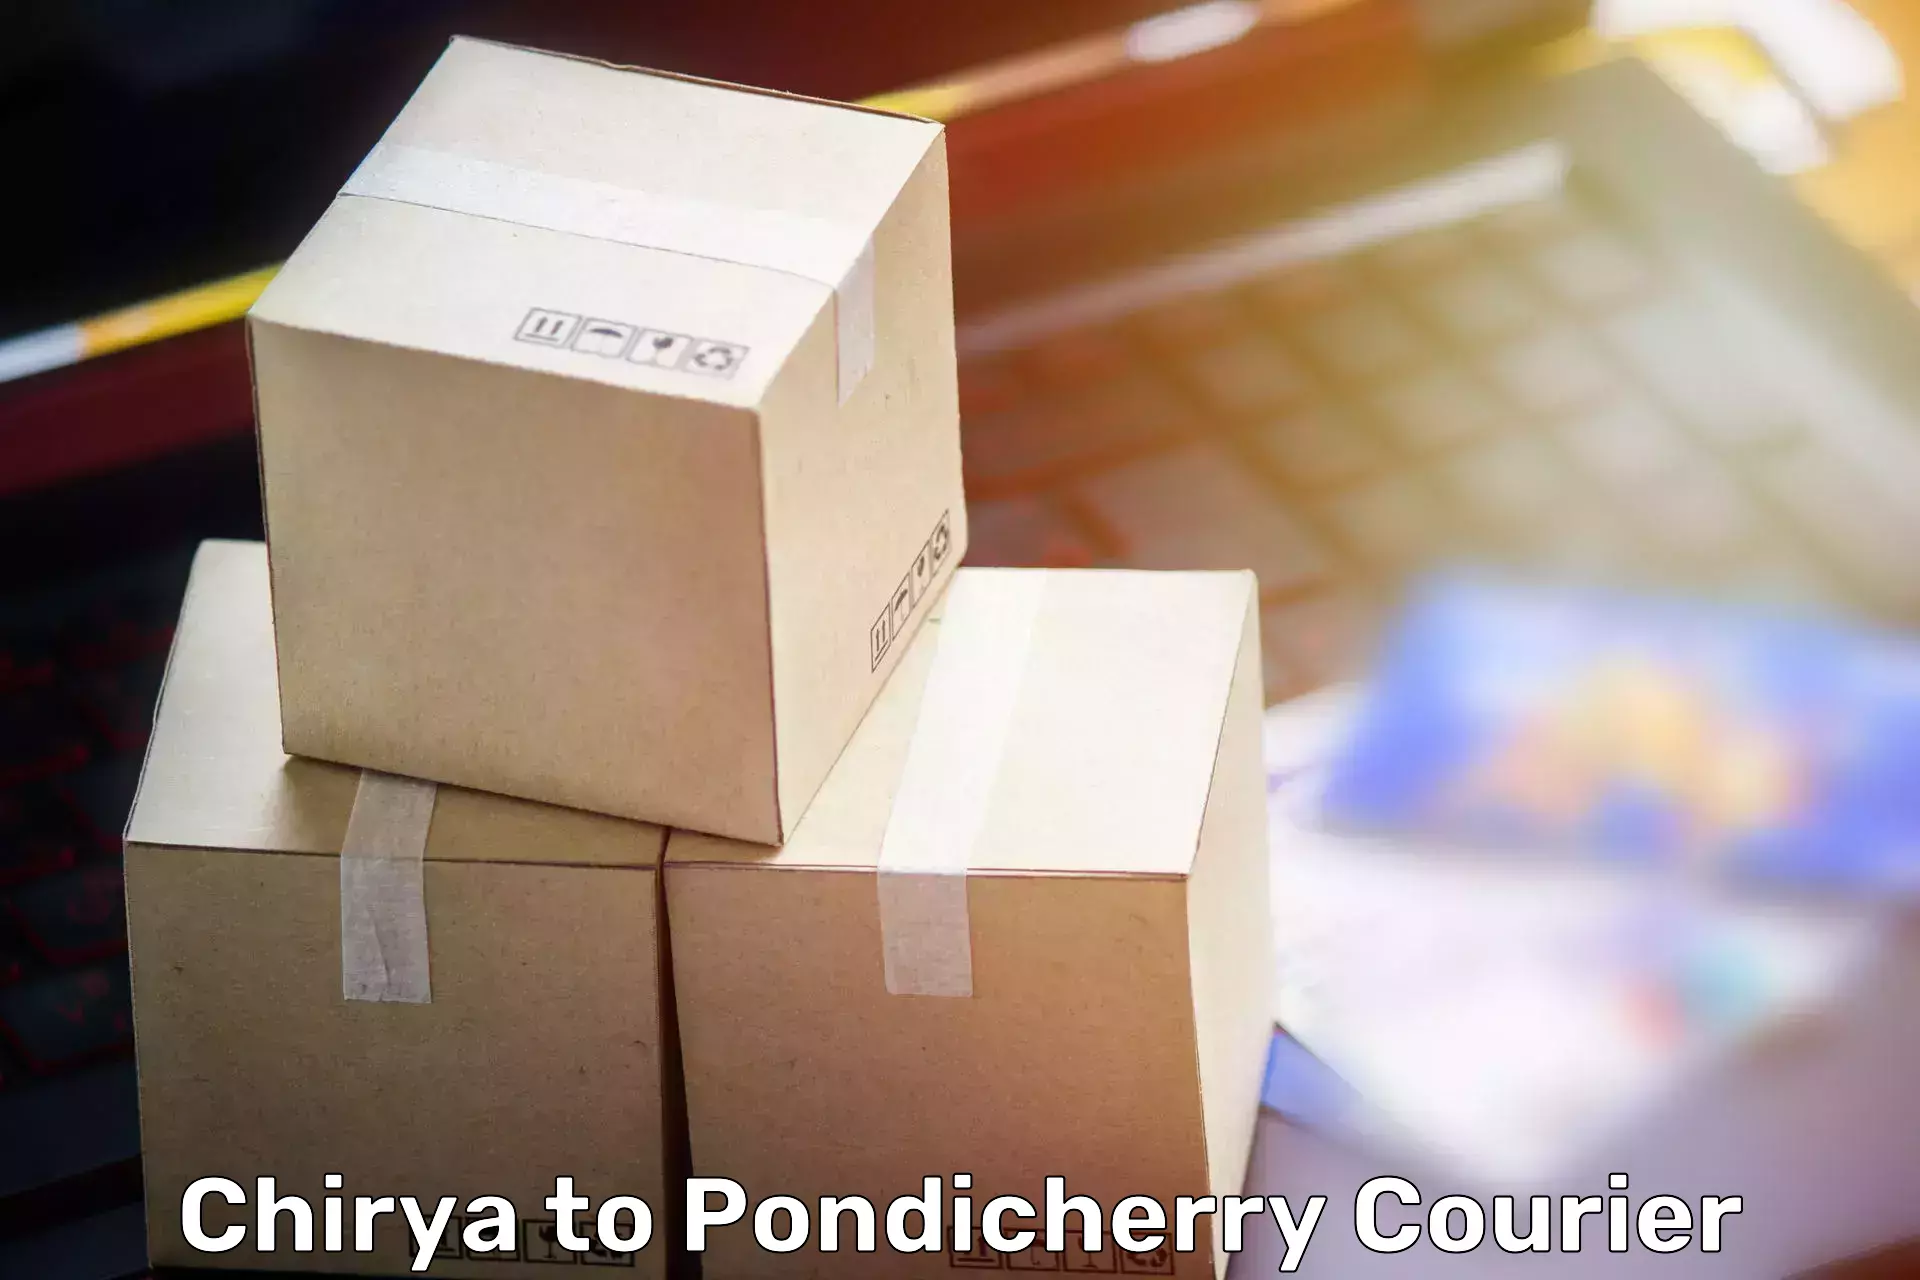 Furniture relocation experts Chirya to Pondicherry